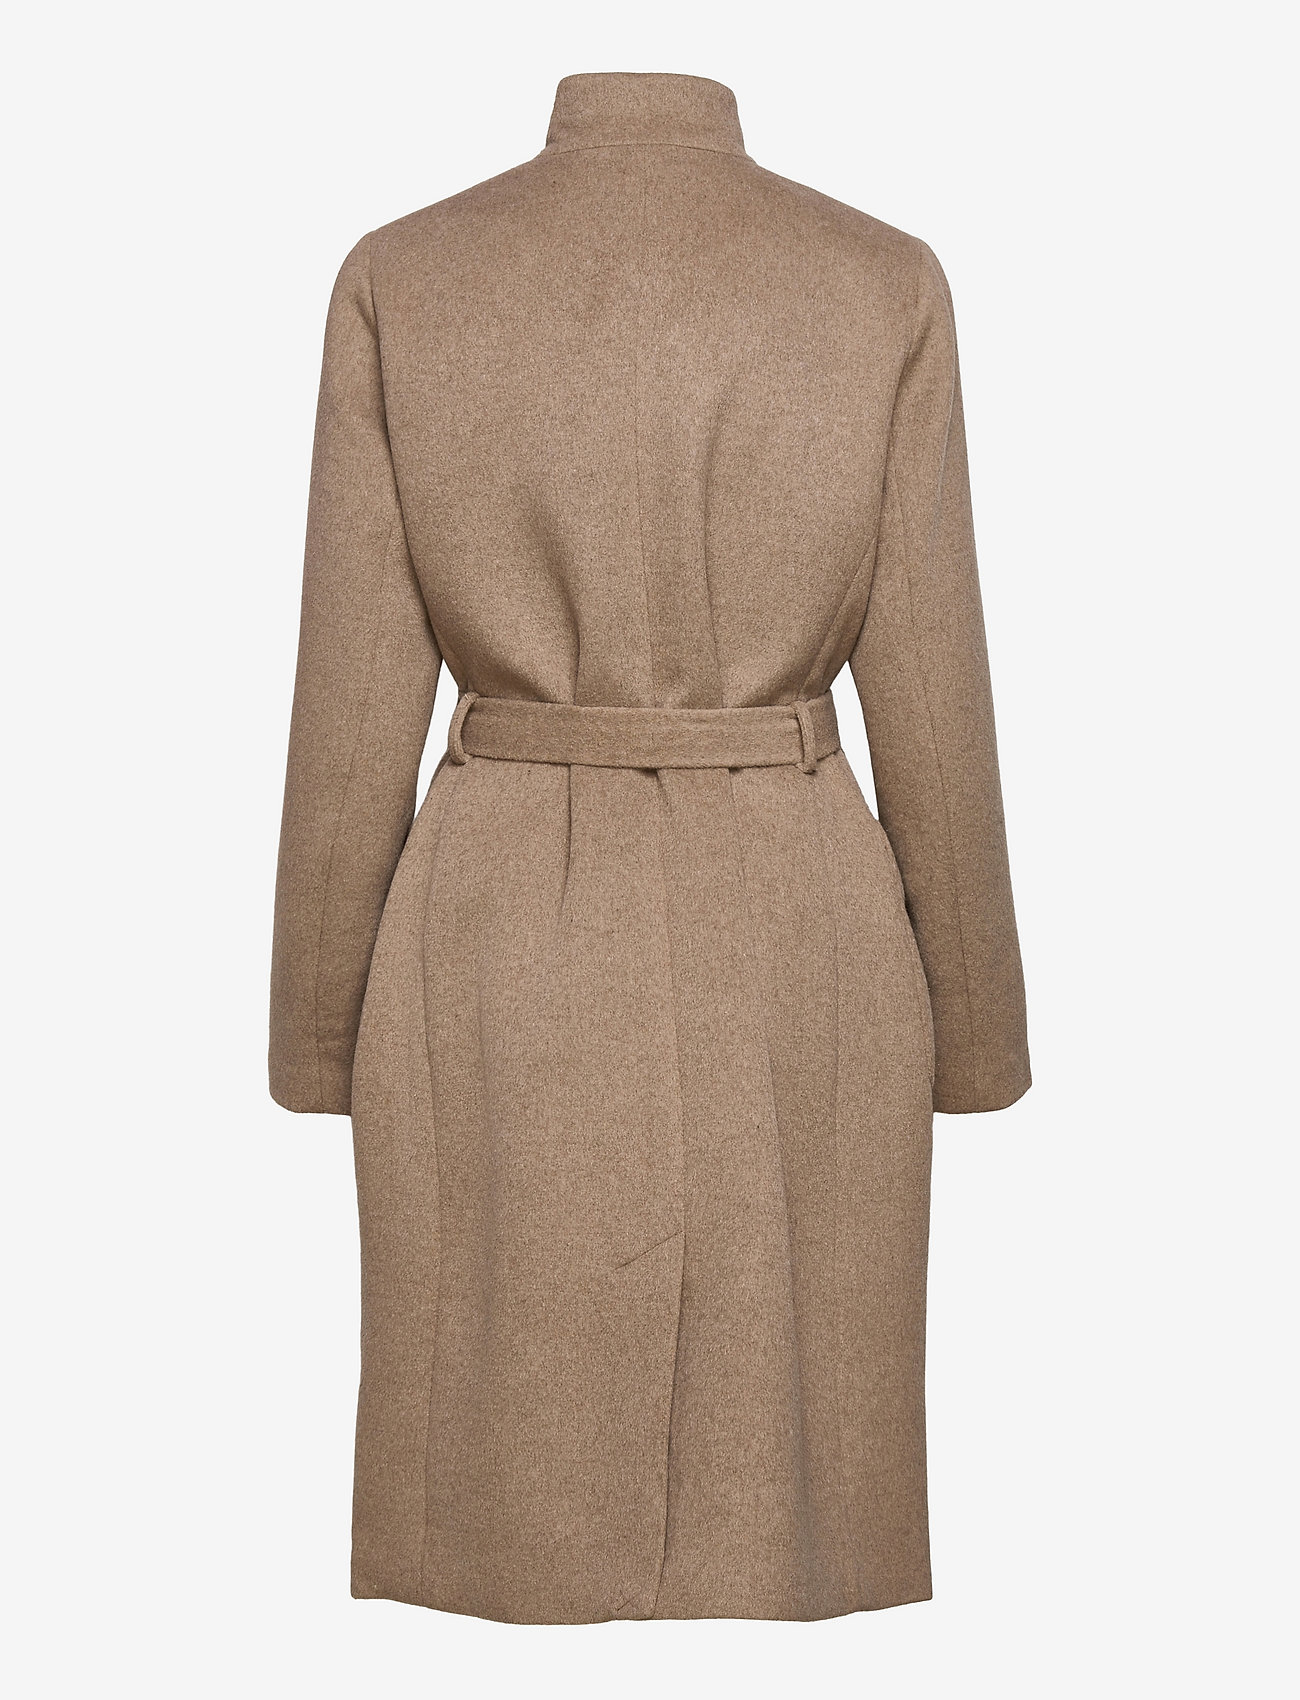 Bruuns Bazaar - KatarinaBBBPerle coat - talvemantlid - roasted grey khaki - 1